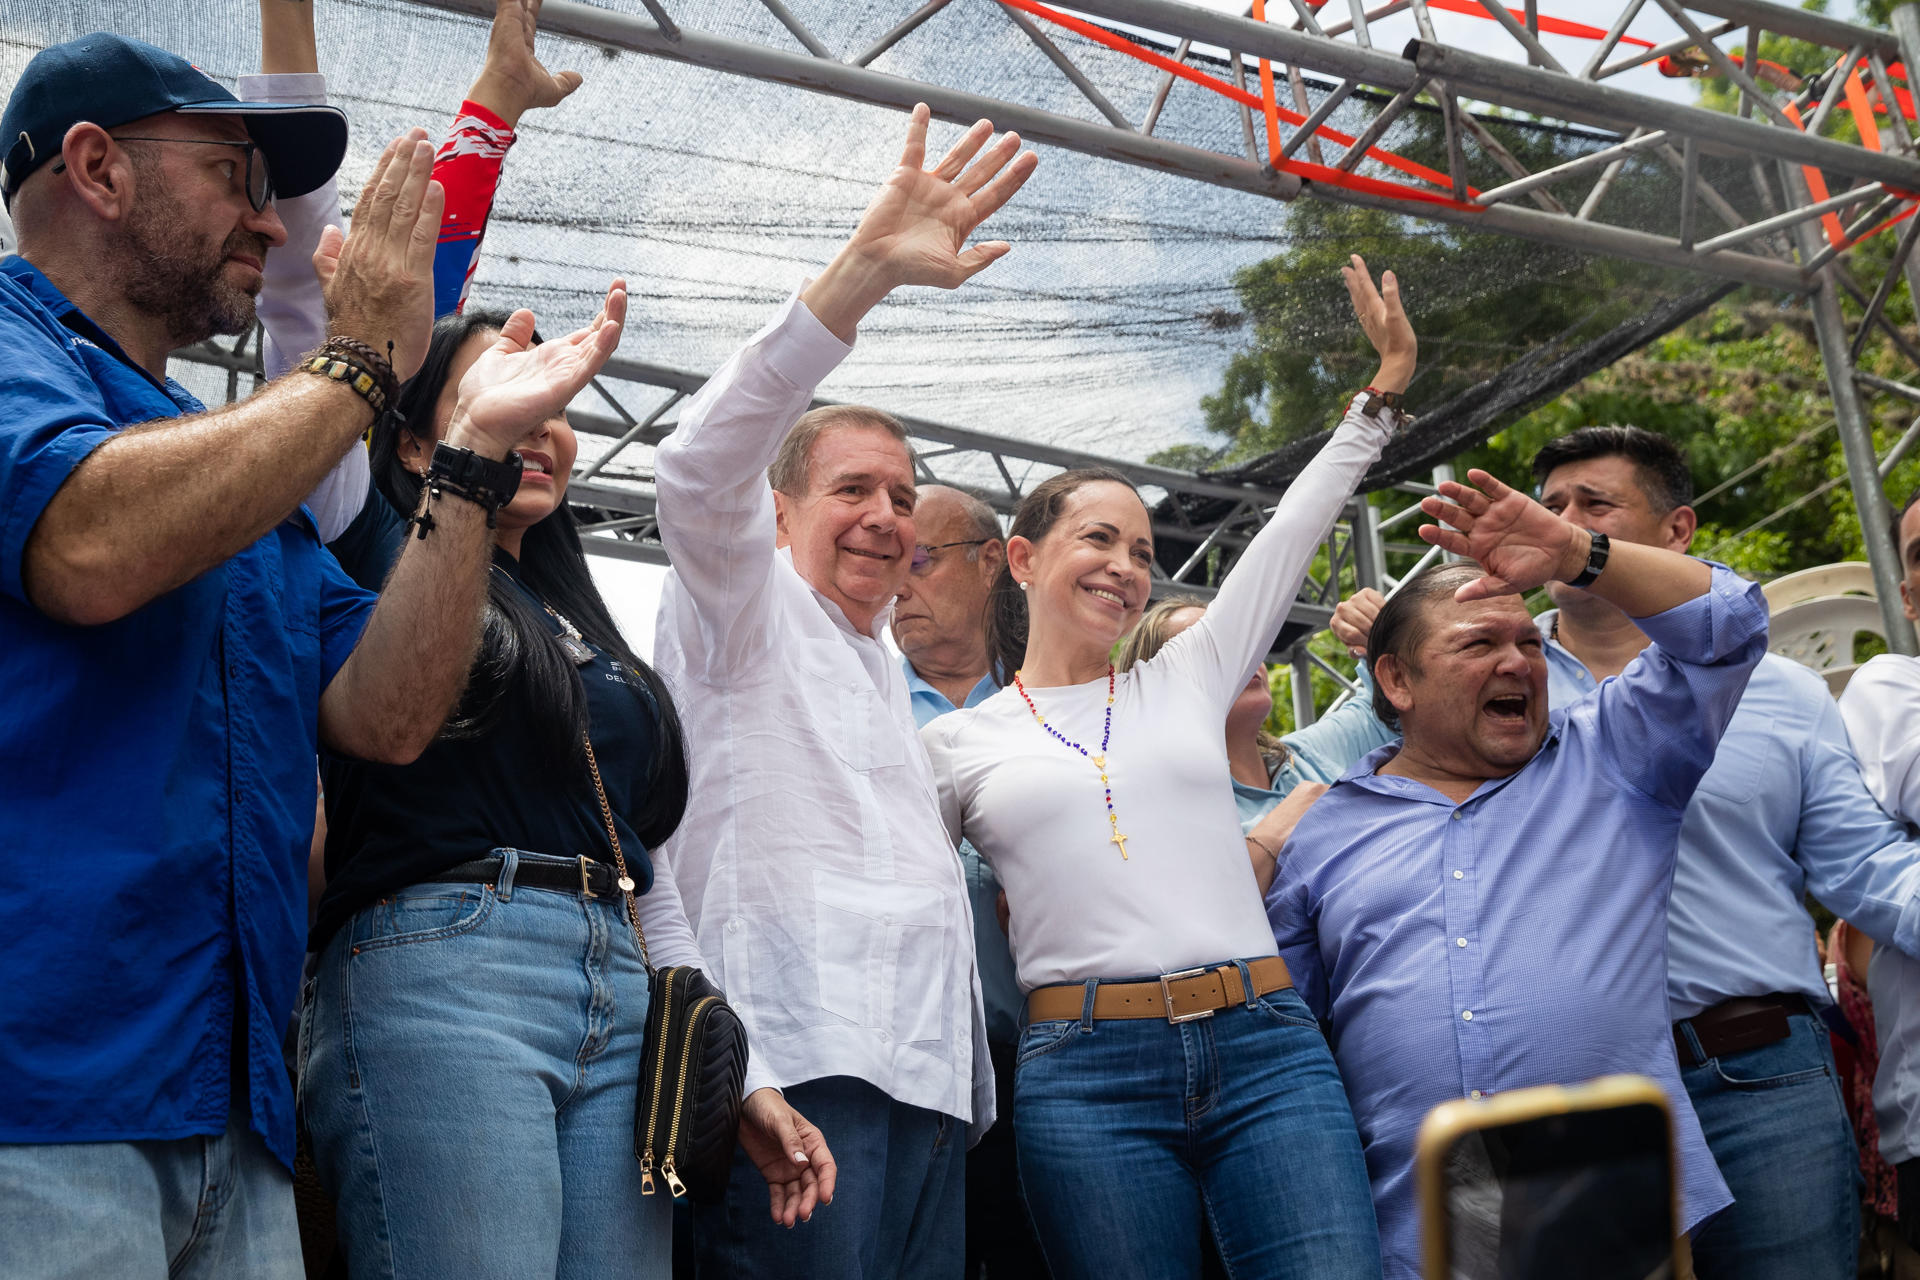 Reuters: La oposición venezolana toca la fibra sensible en una inusual campaña presidencial